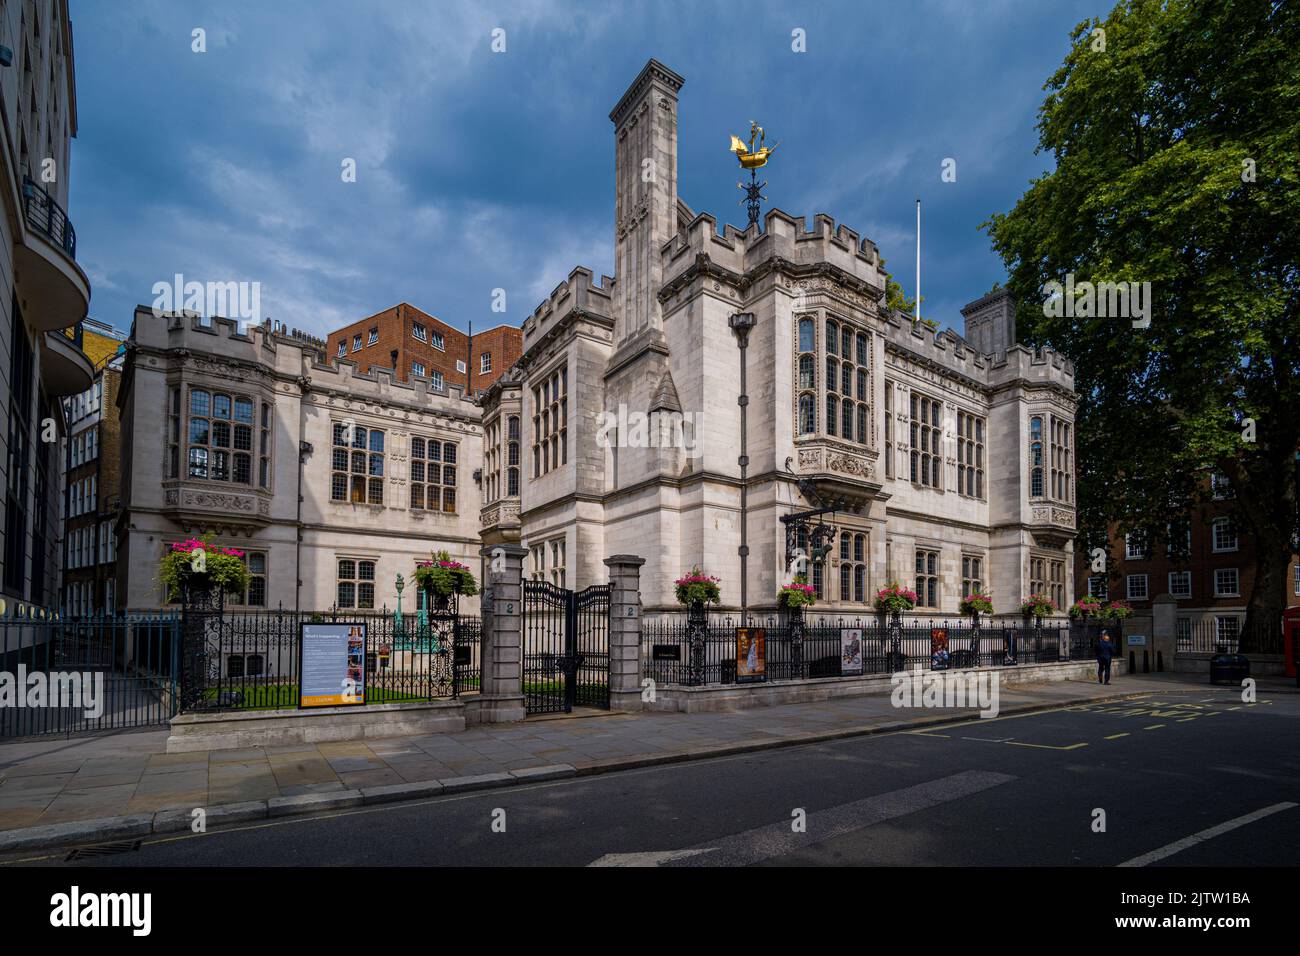 Two Temple Place, ehemals Astor House, ist ein öffentliches Kunstgalerie-Gebäude in der Nähe des Victoria Embankment Central London. Erbaut 1895. 2 Temple Place. Stockfoto